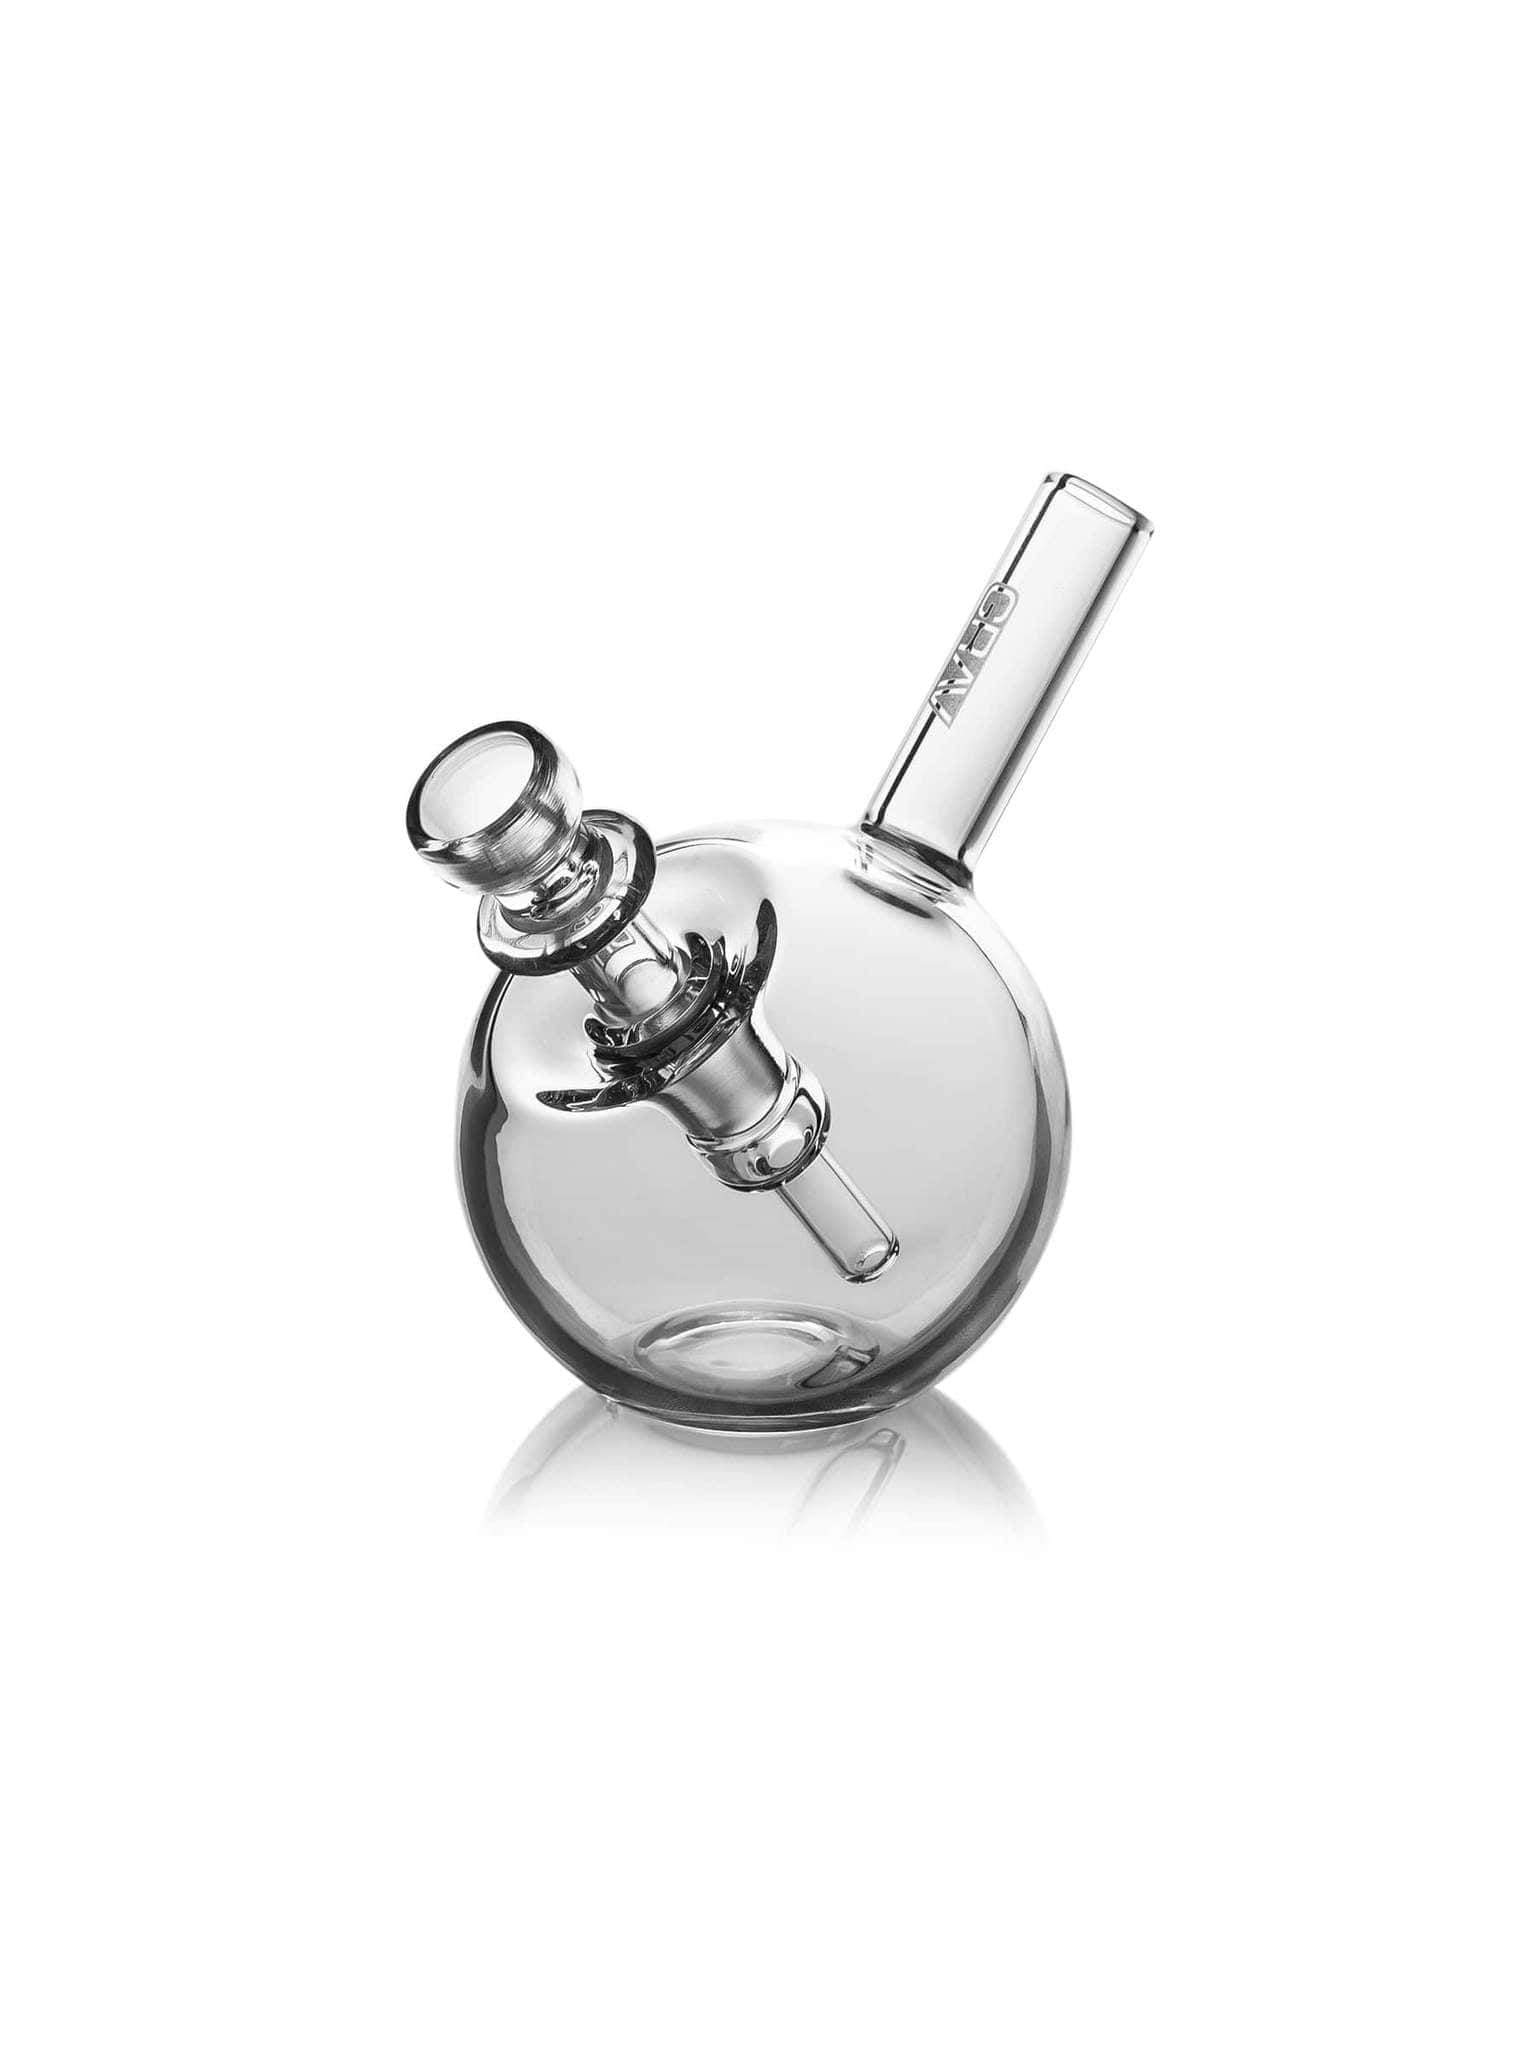 GRAV Glass Spherical Pocket Bubbler